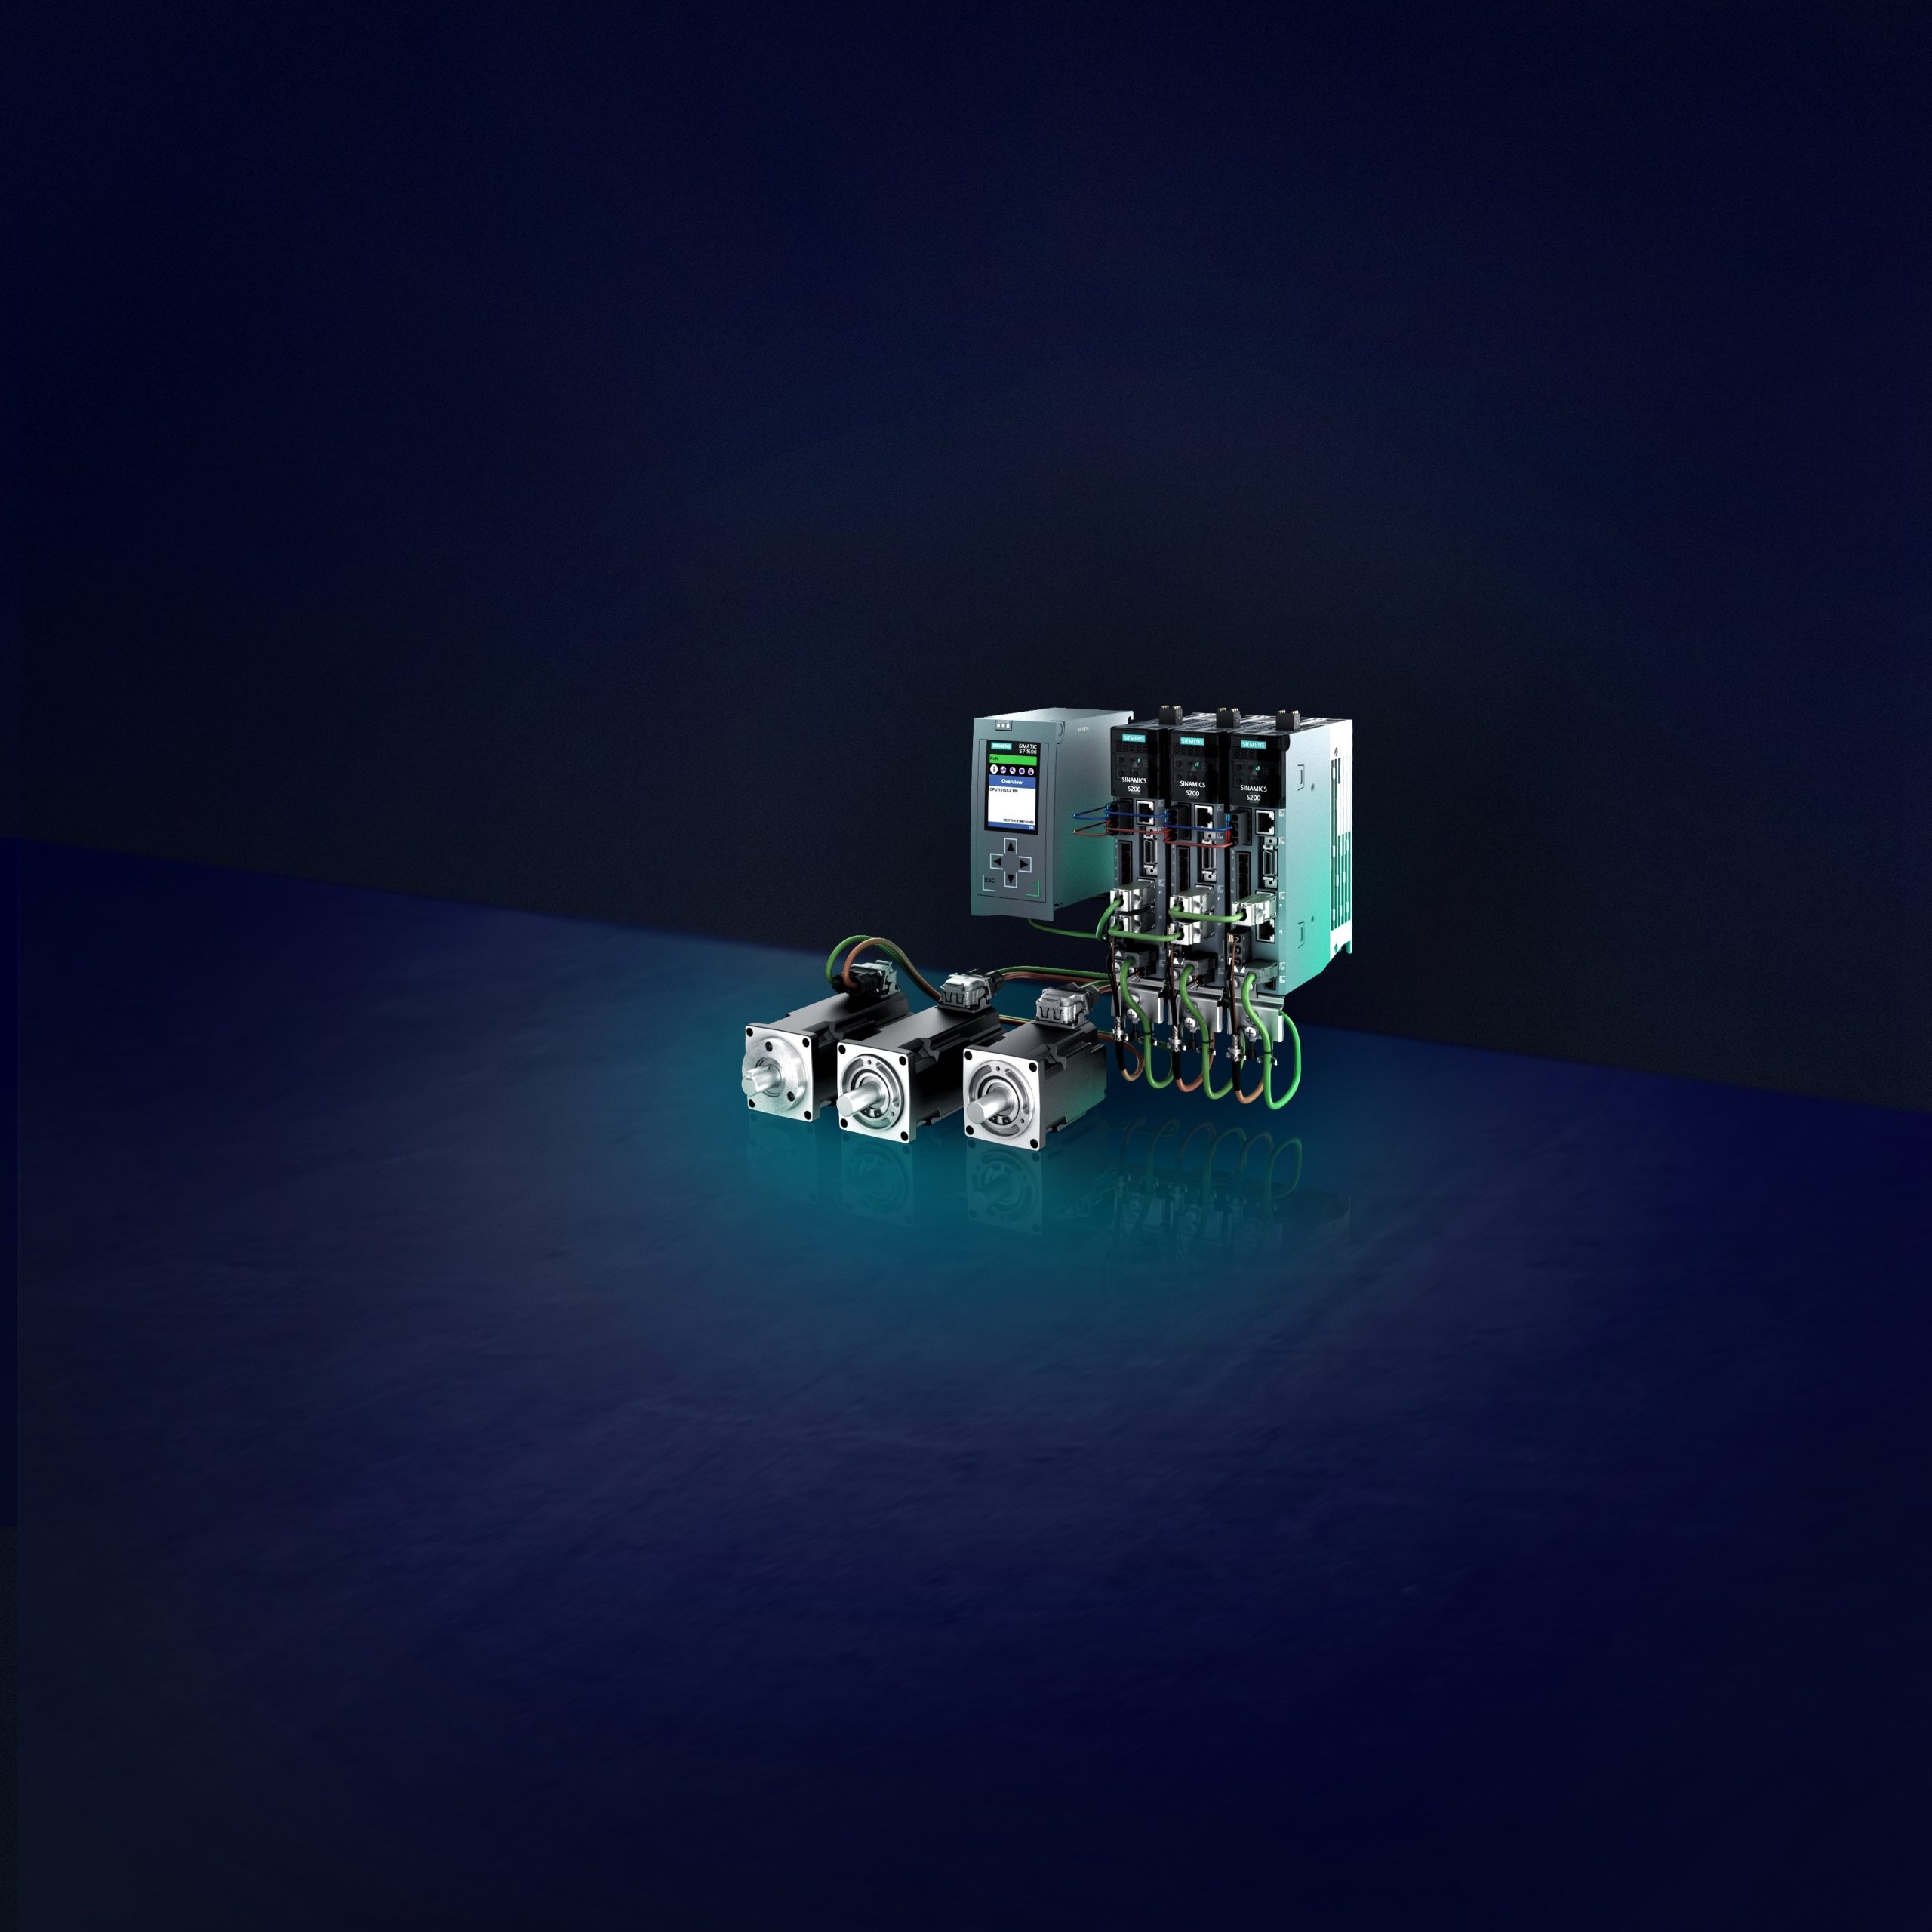 Siemens-Servoantriebssystemfür die Batterie- und Elektronikindustrie